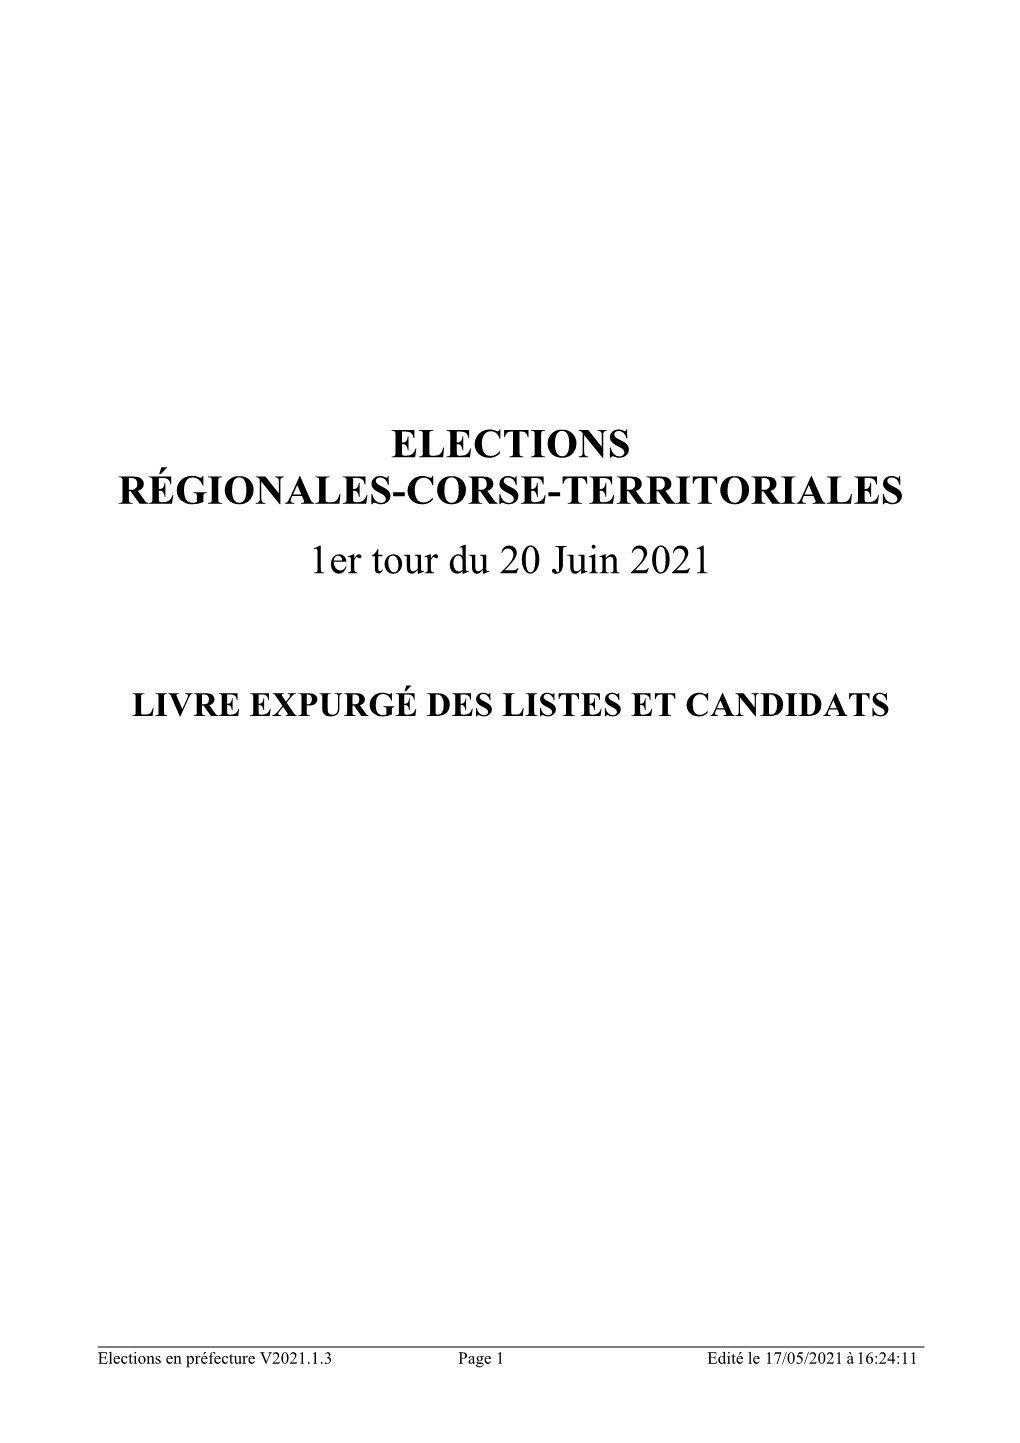 ELECTIONS RÉGIONALES-CORSE-TERRITORIALES 1Er Tour Du 20 Juin 2021